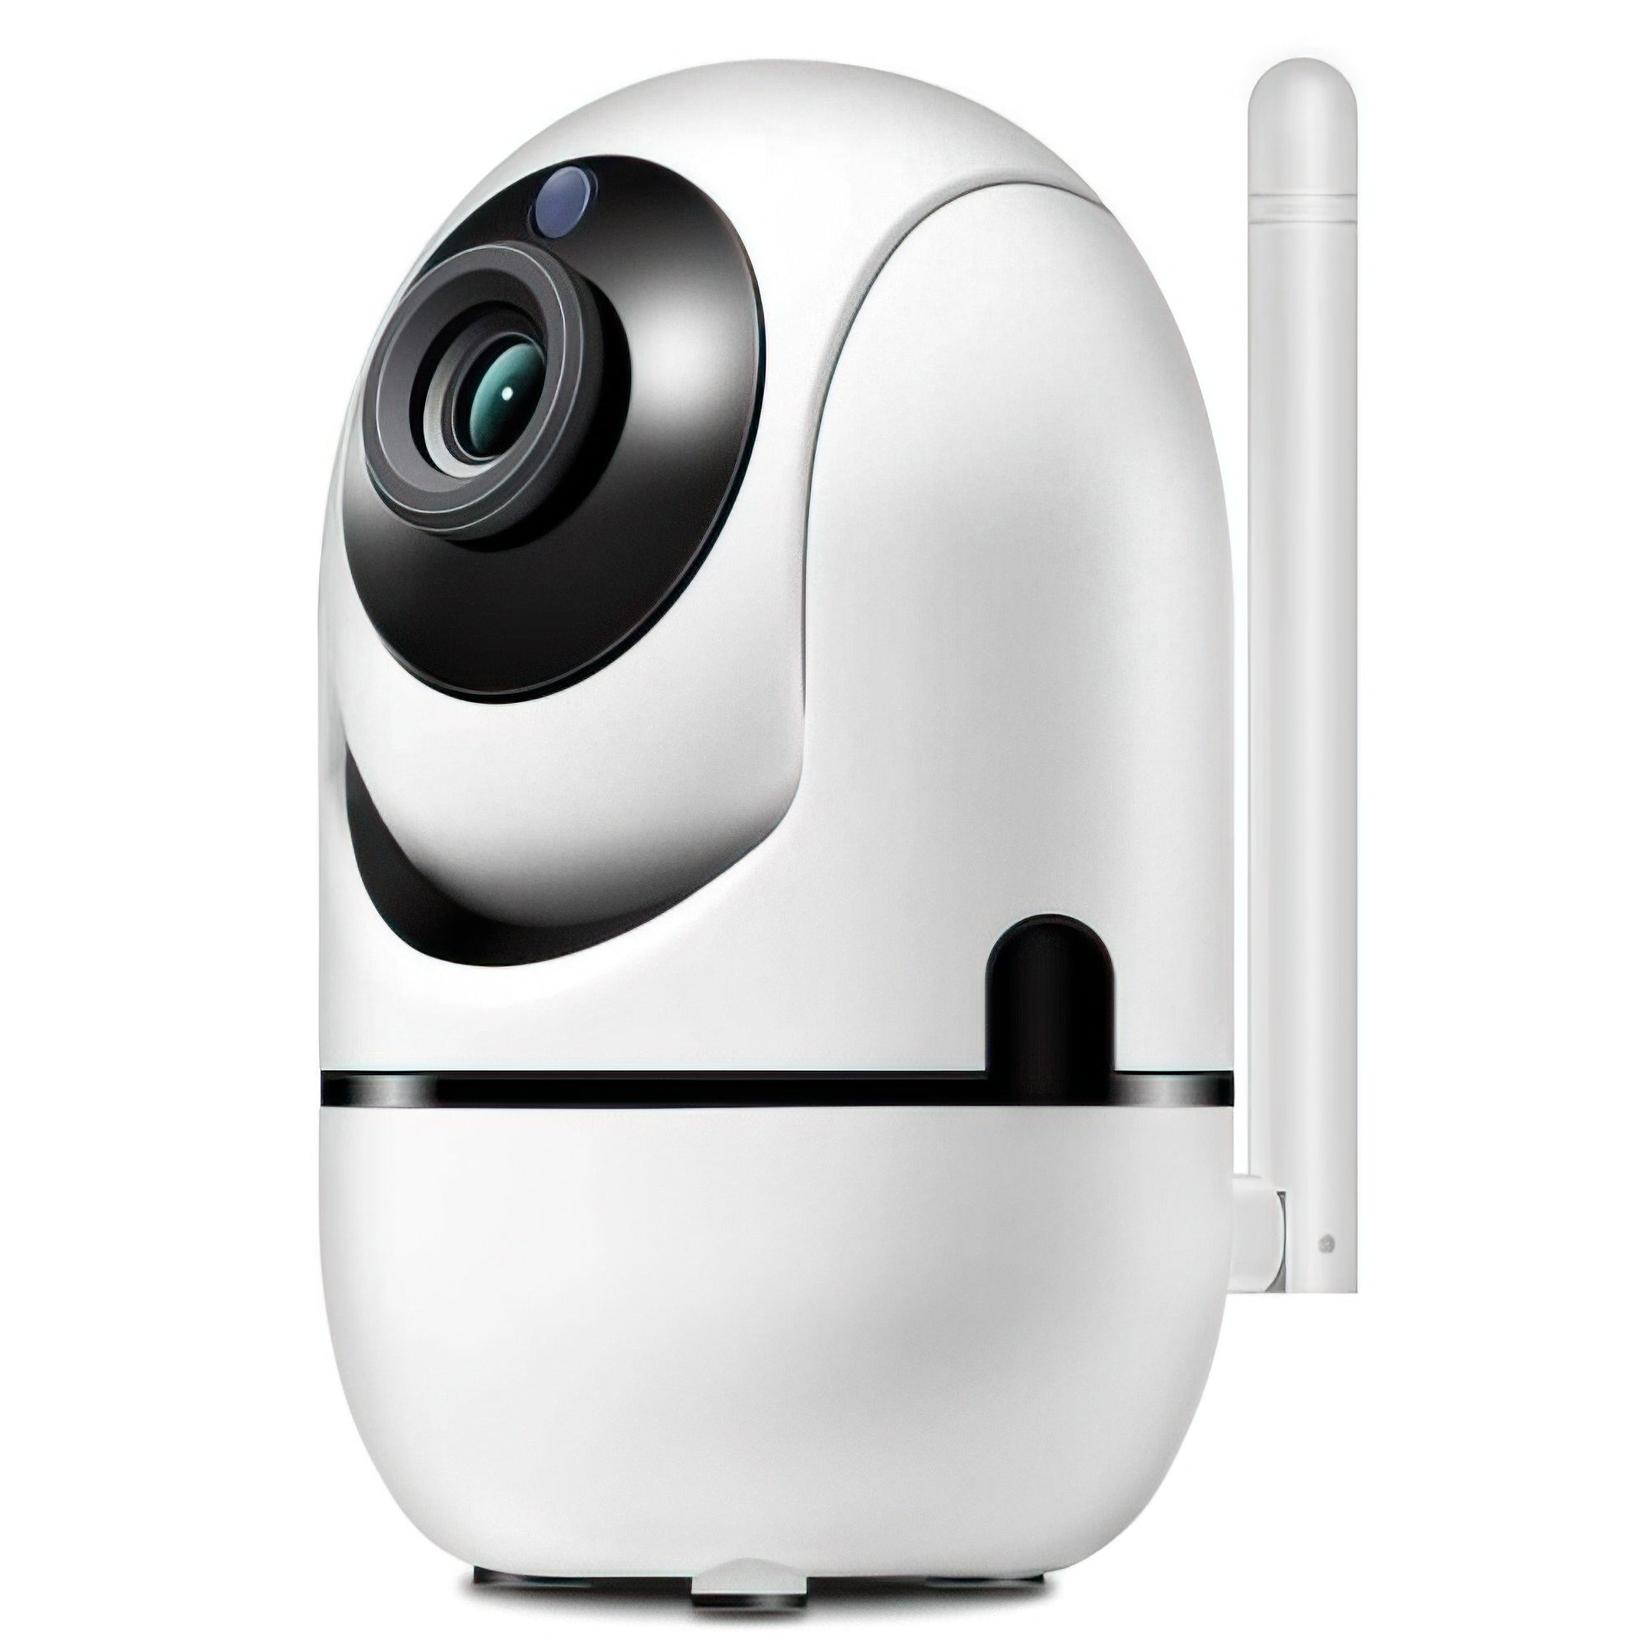 Slike Надзорна безжична камера wifi smart net camera V380 Pro 1